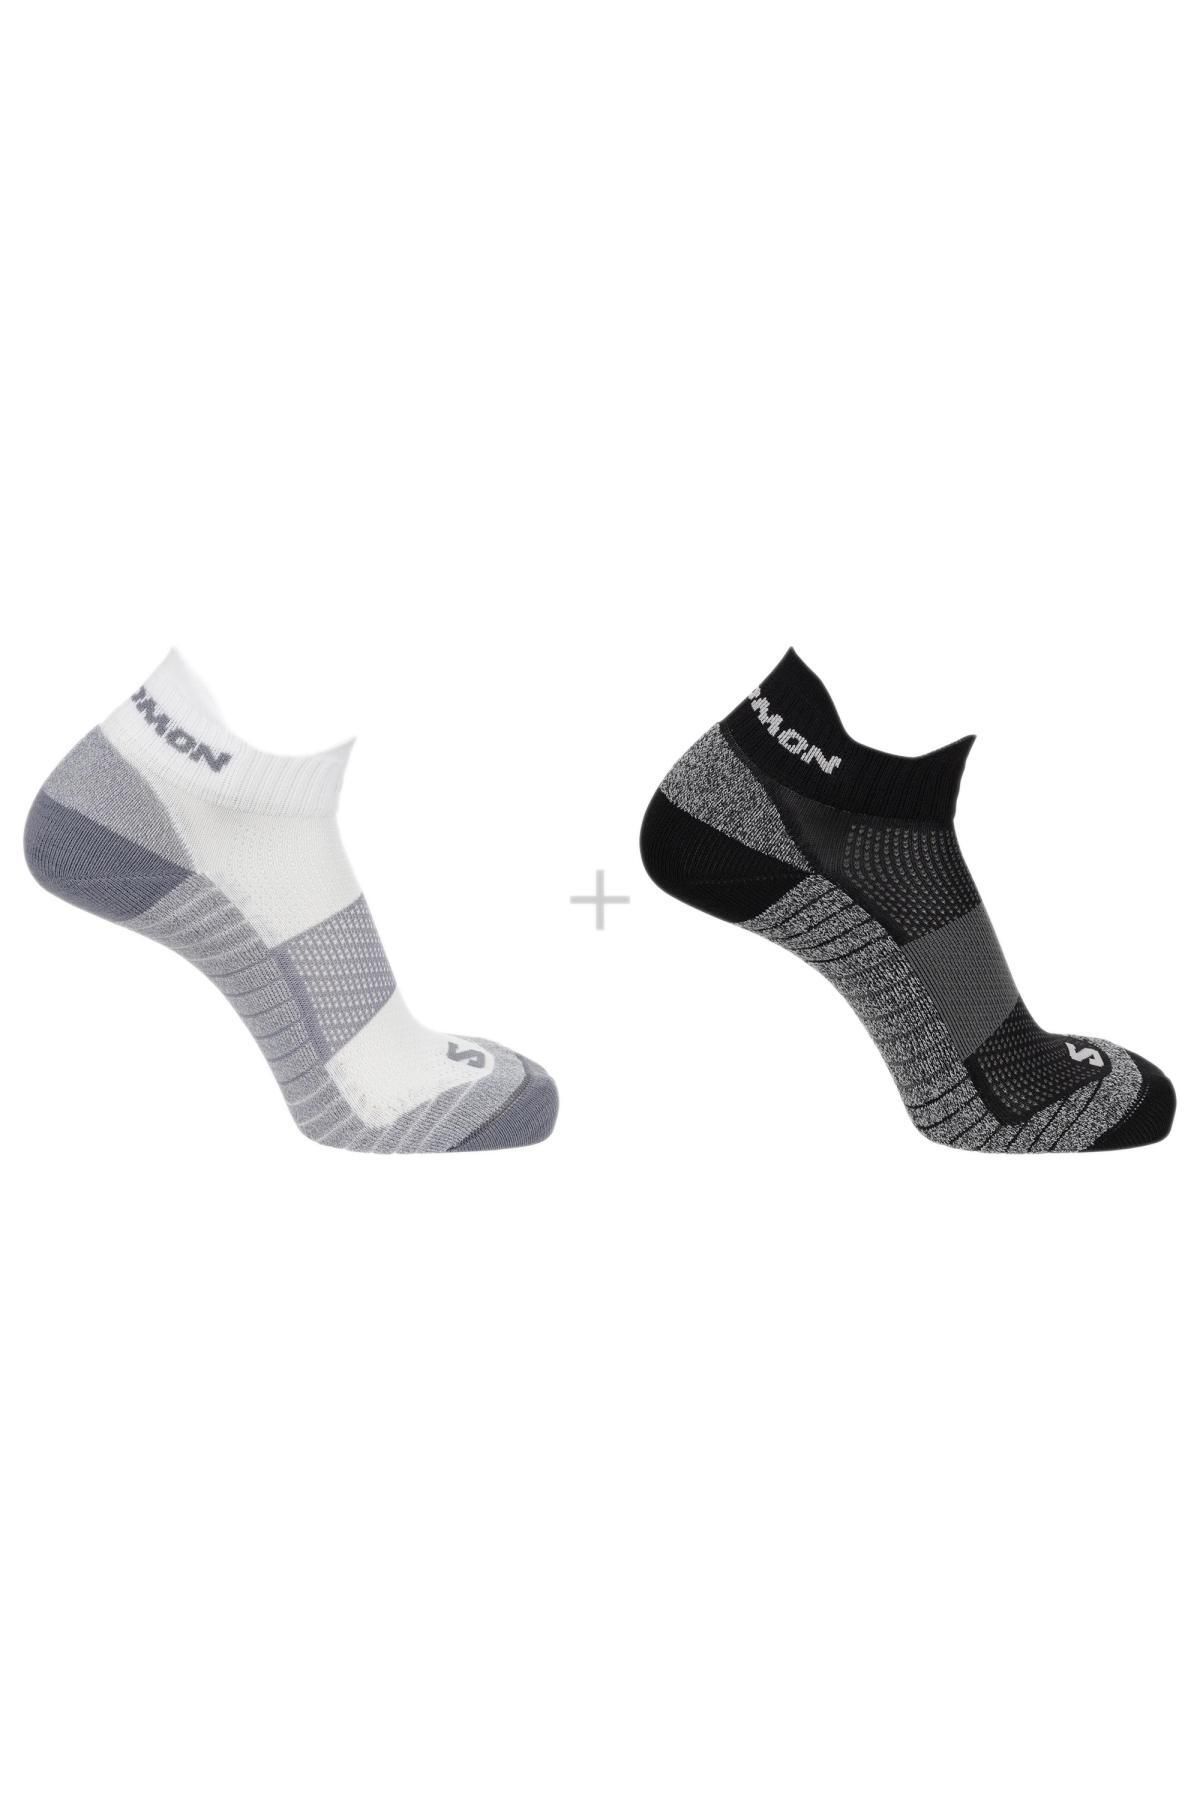 Salomon Lc2093600 Aero Ankle 2-Pack Çorap Çok Renkli Unisex Çorap